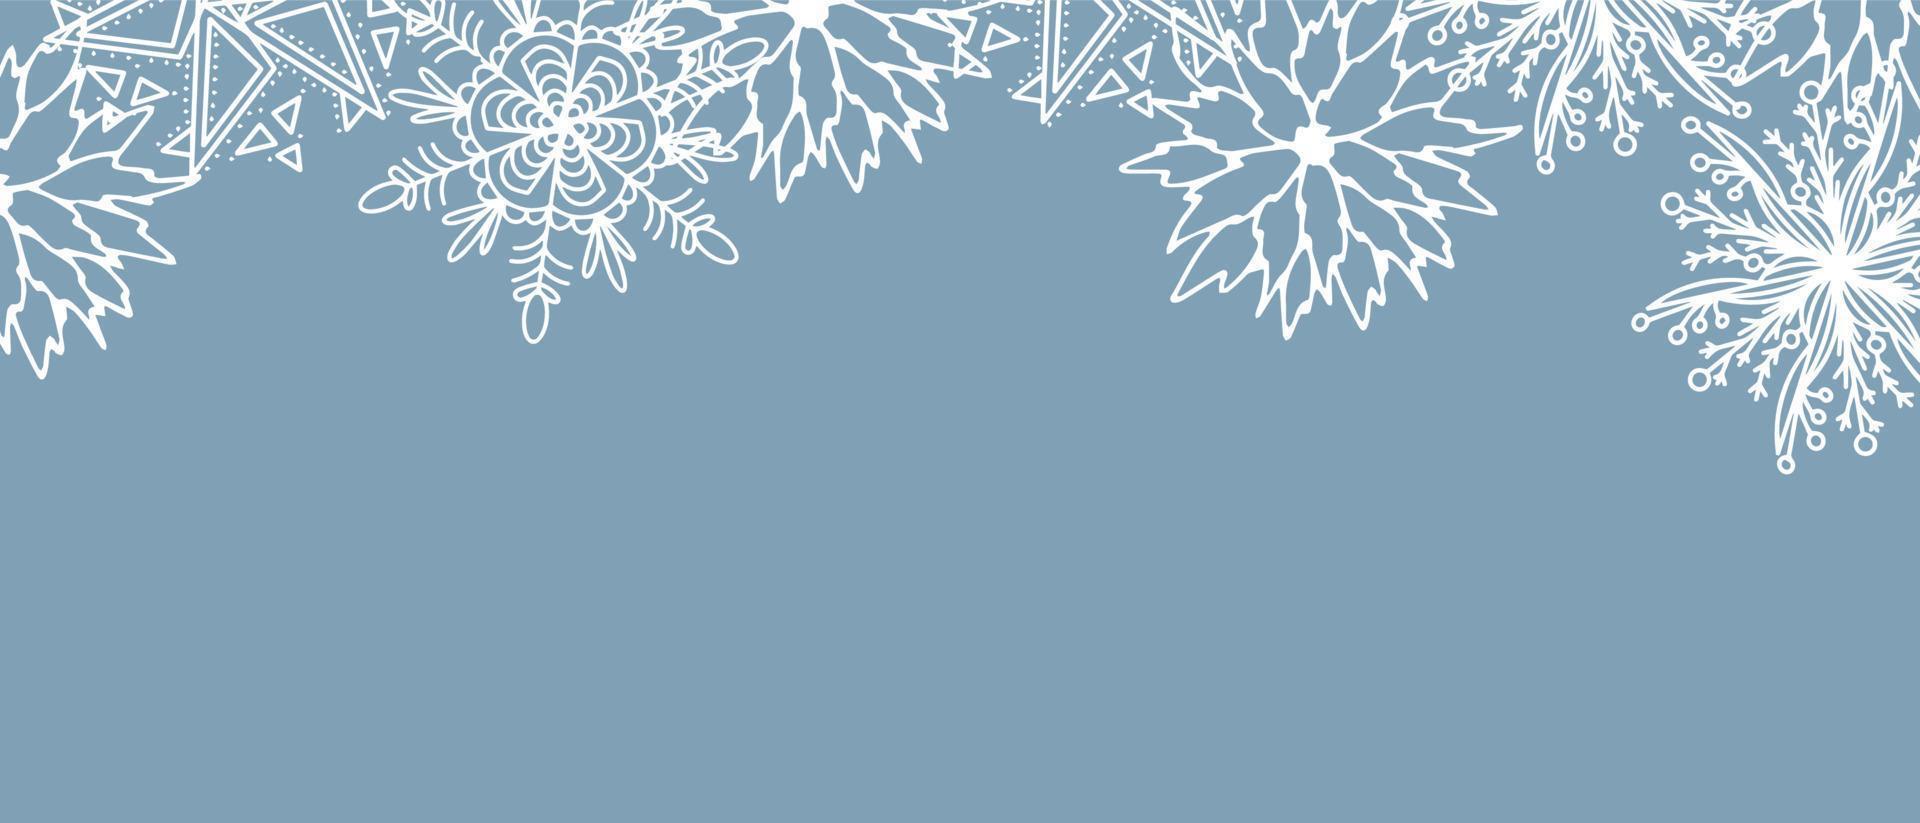 skön uppsättning av vit botanisk element jul träd, bär för vinter- design. samling av jul ny år element. frysta silhuetter av kristall kvistar på en blå bakgrund. vektor